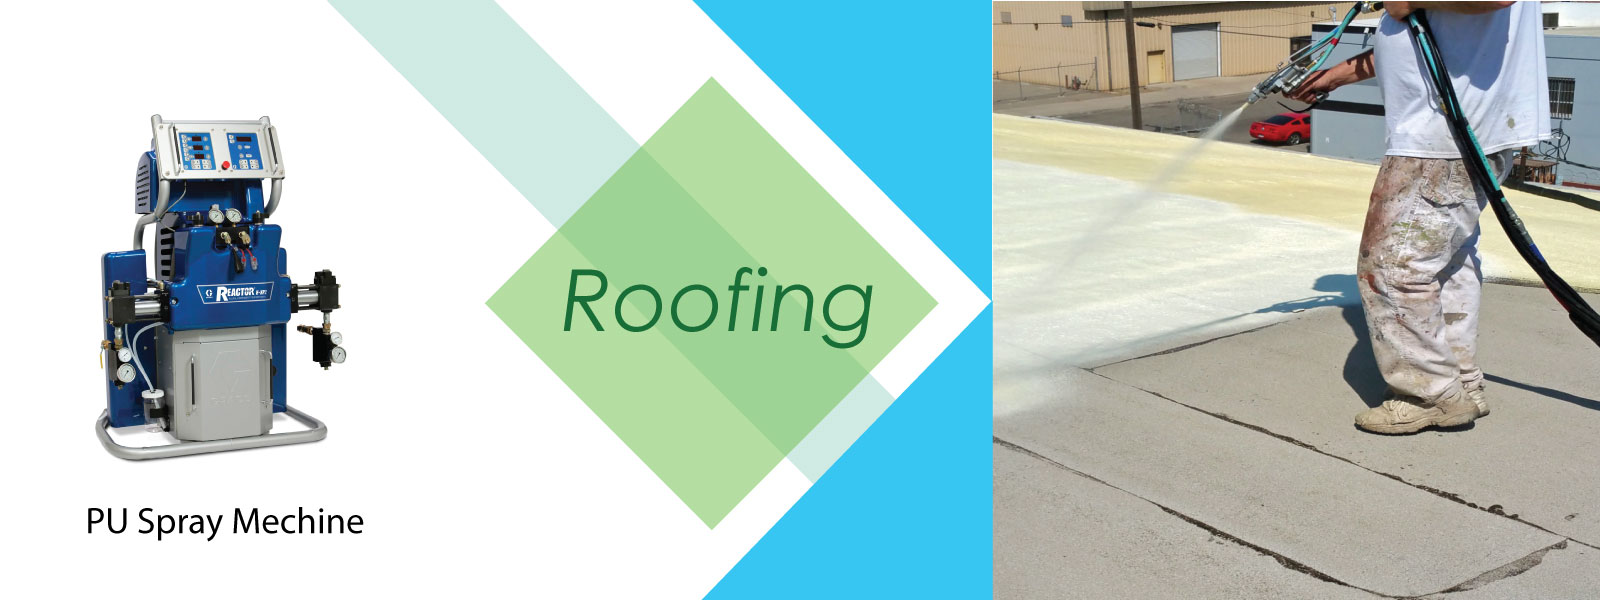 floorintech roofing spray machine